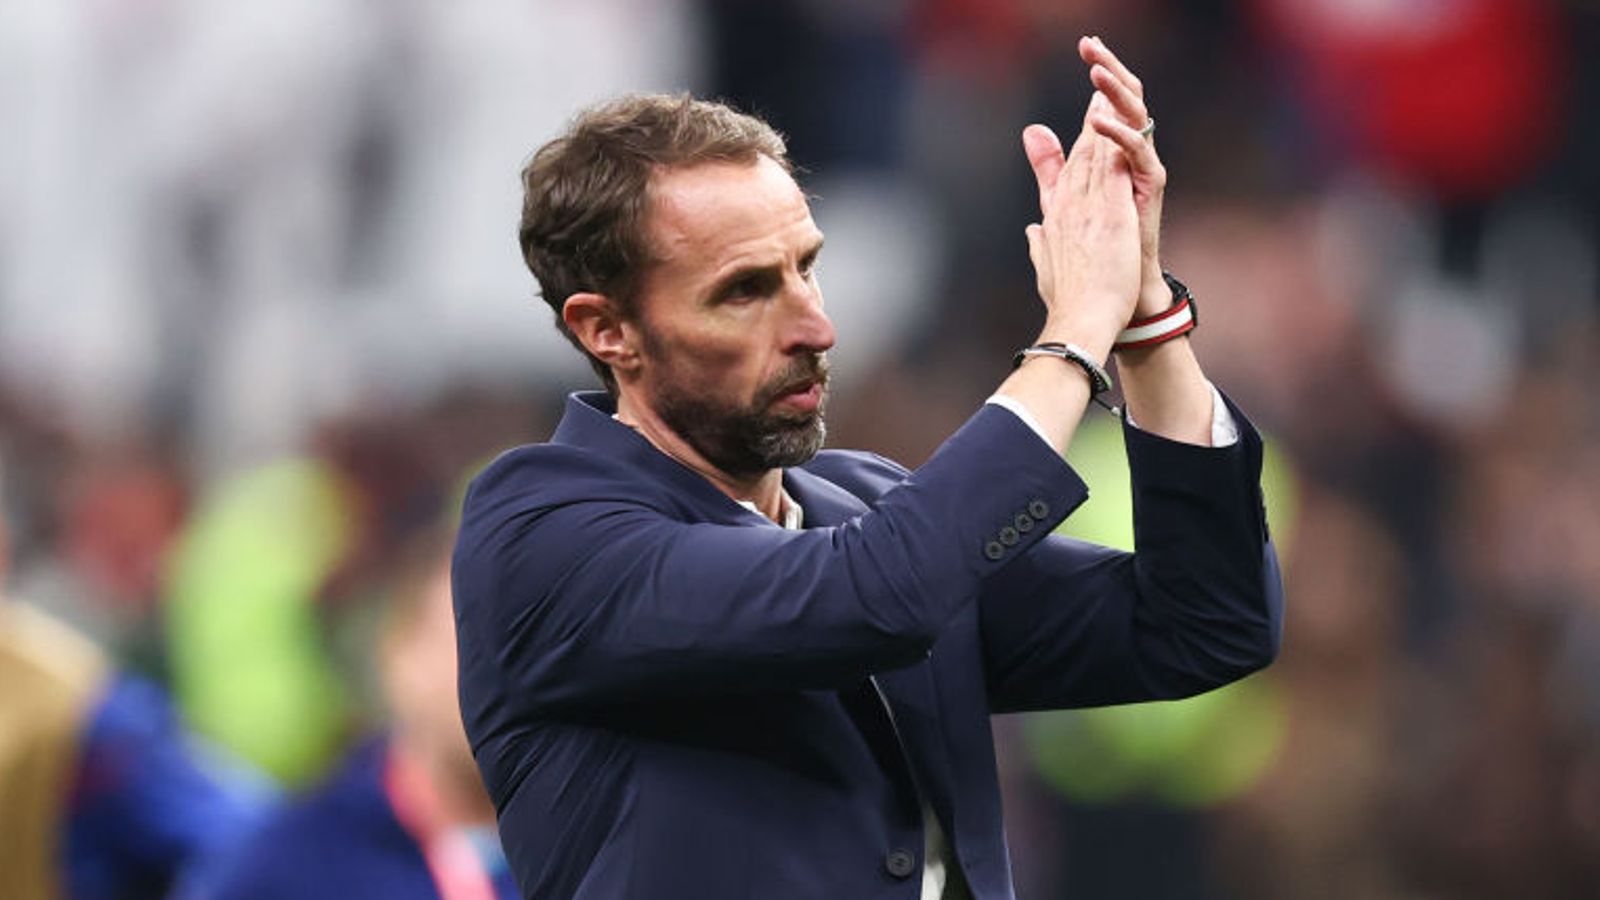 Gareth Southgate a l’intention de rester en tant que manager de l’Angleterre jusqu’à l’Euro 2024 |  Nouvelles du football